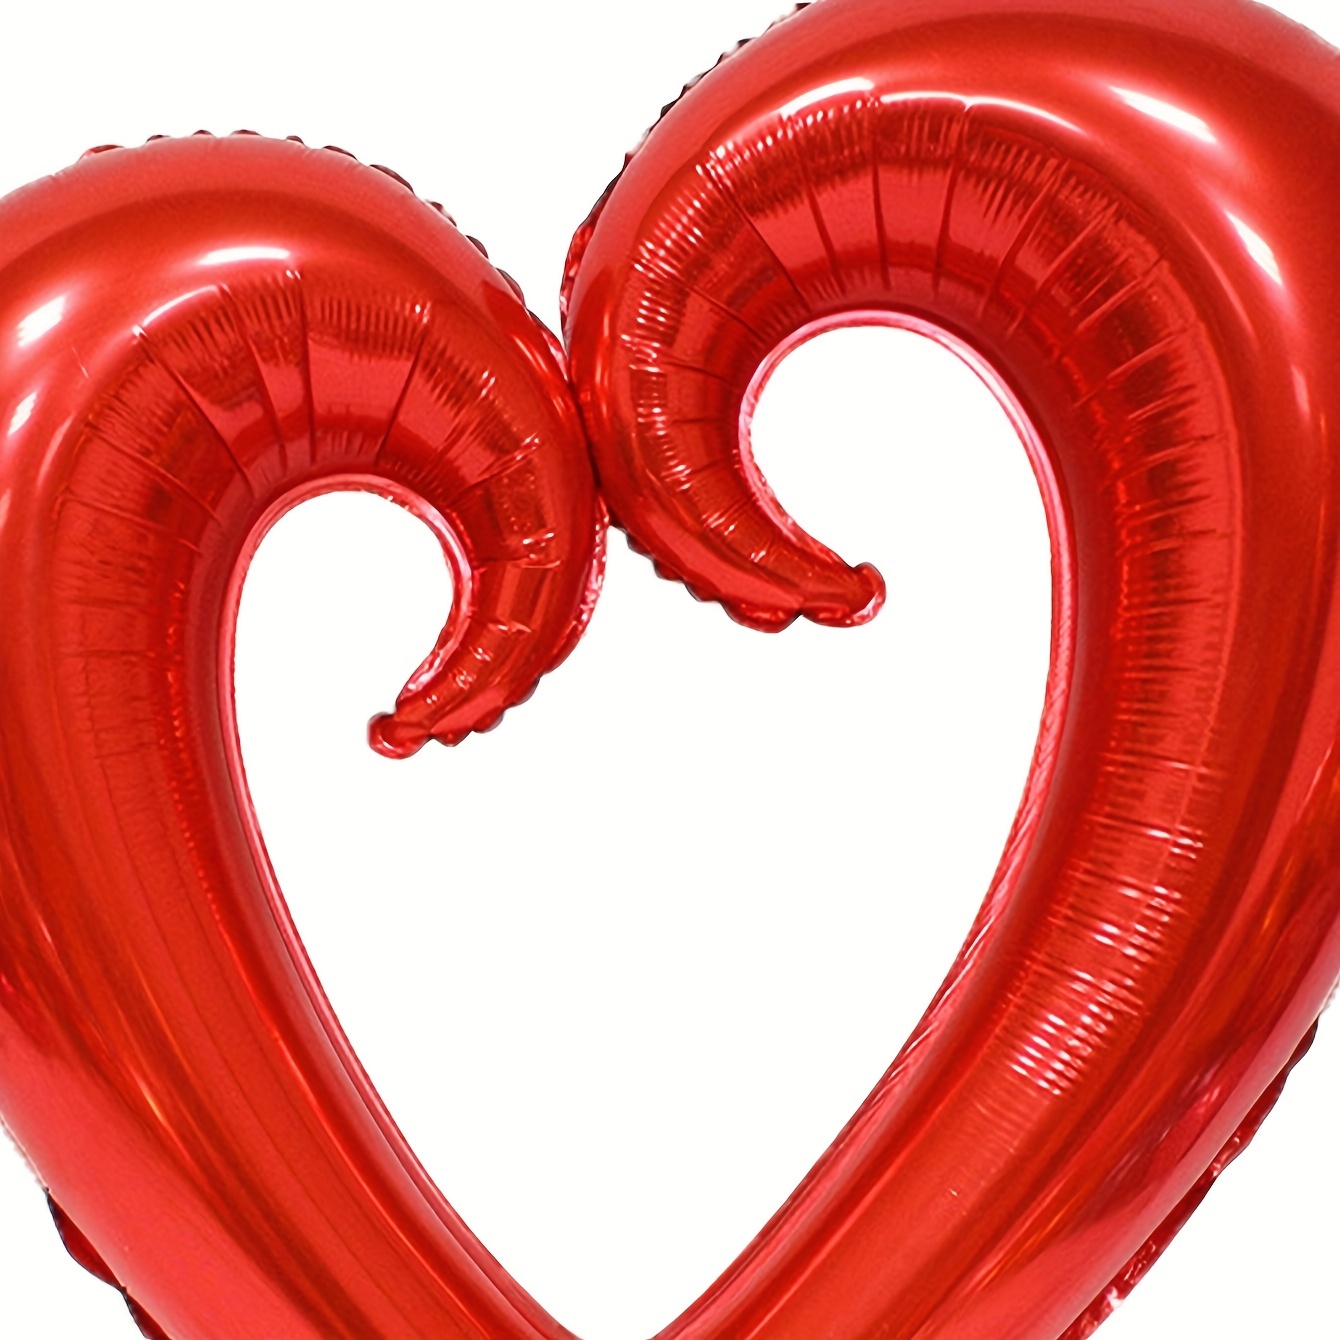 Ballon coeur rouge géant pour décoration saint-valentin ou mariage